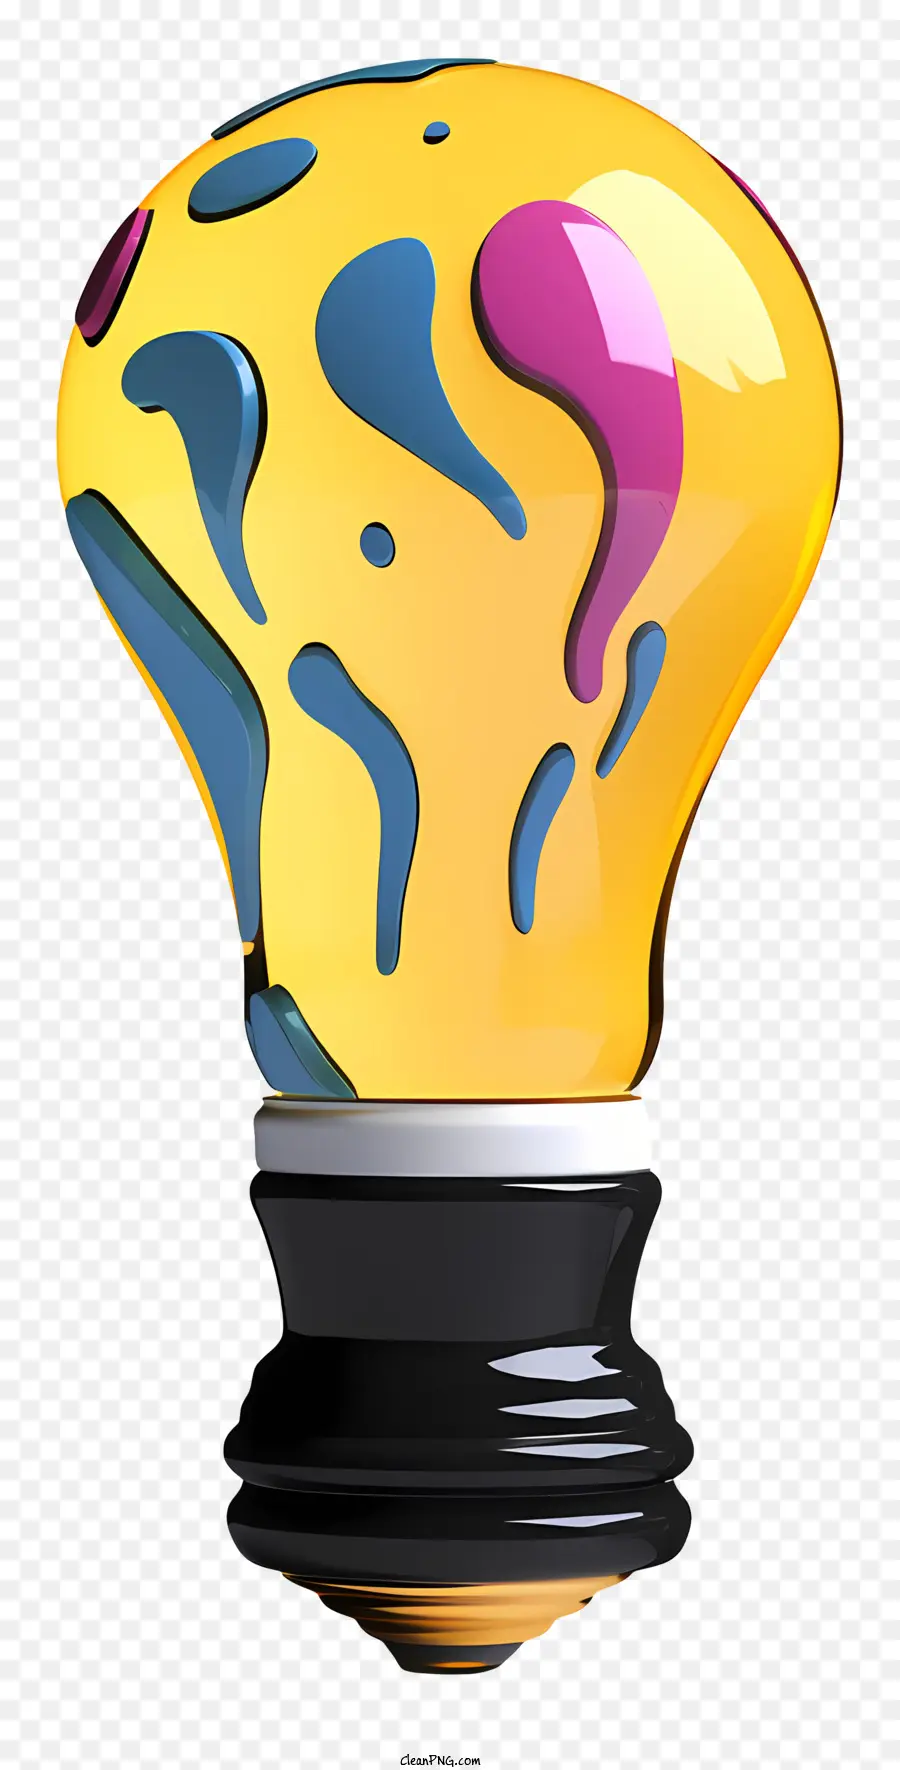 lampadina - Design colorato di schizzi di vernice su lampadina gialla brillante